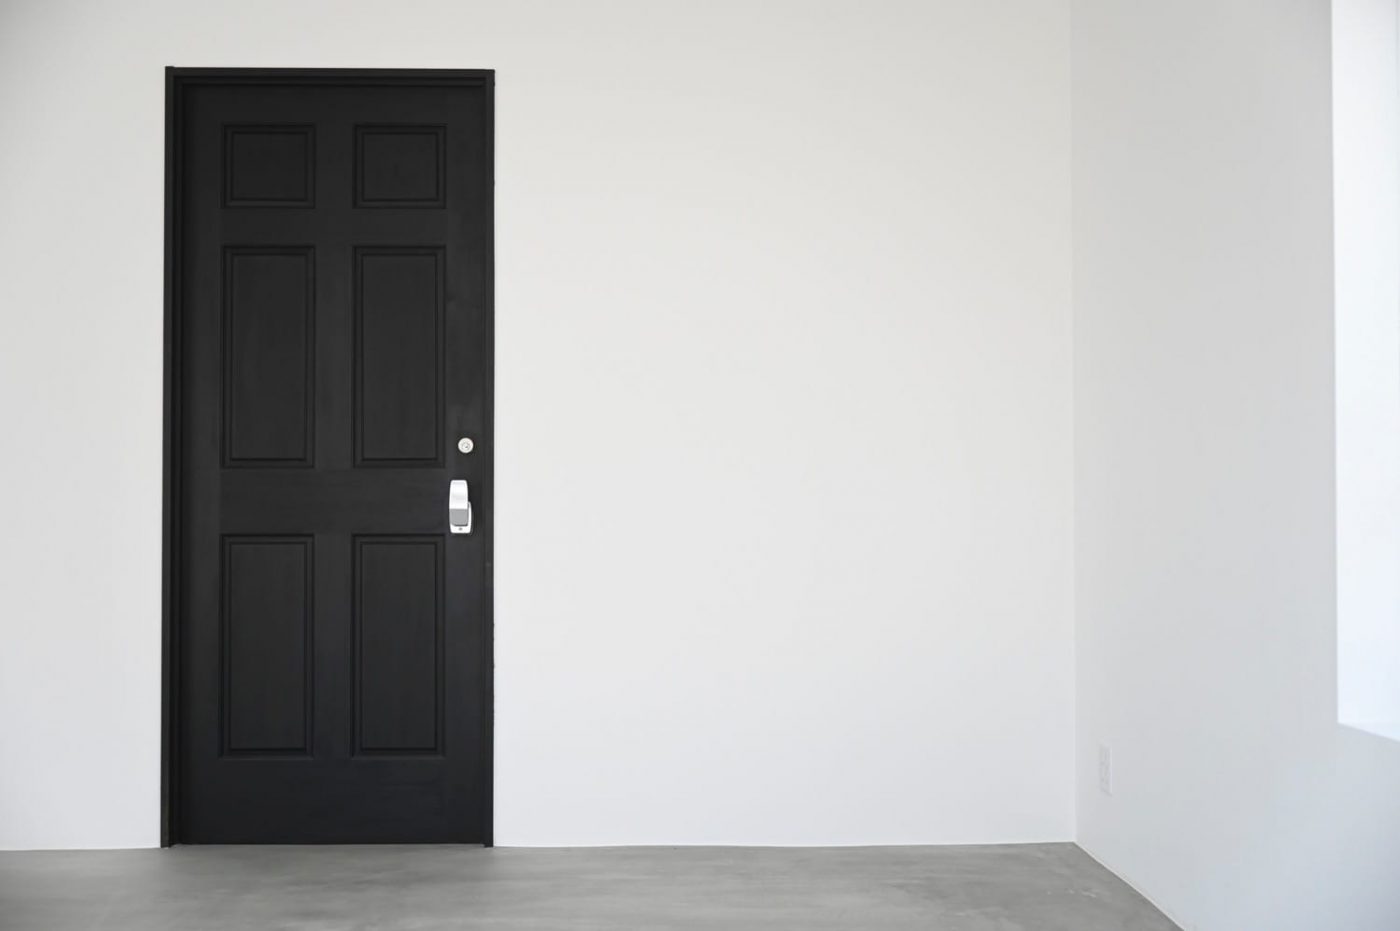 業務用らしいサイズ感と形状は、ドアにインダストリアルな雰囲気をもたらします。（写真提供：photo studio mo’ better）
